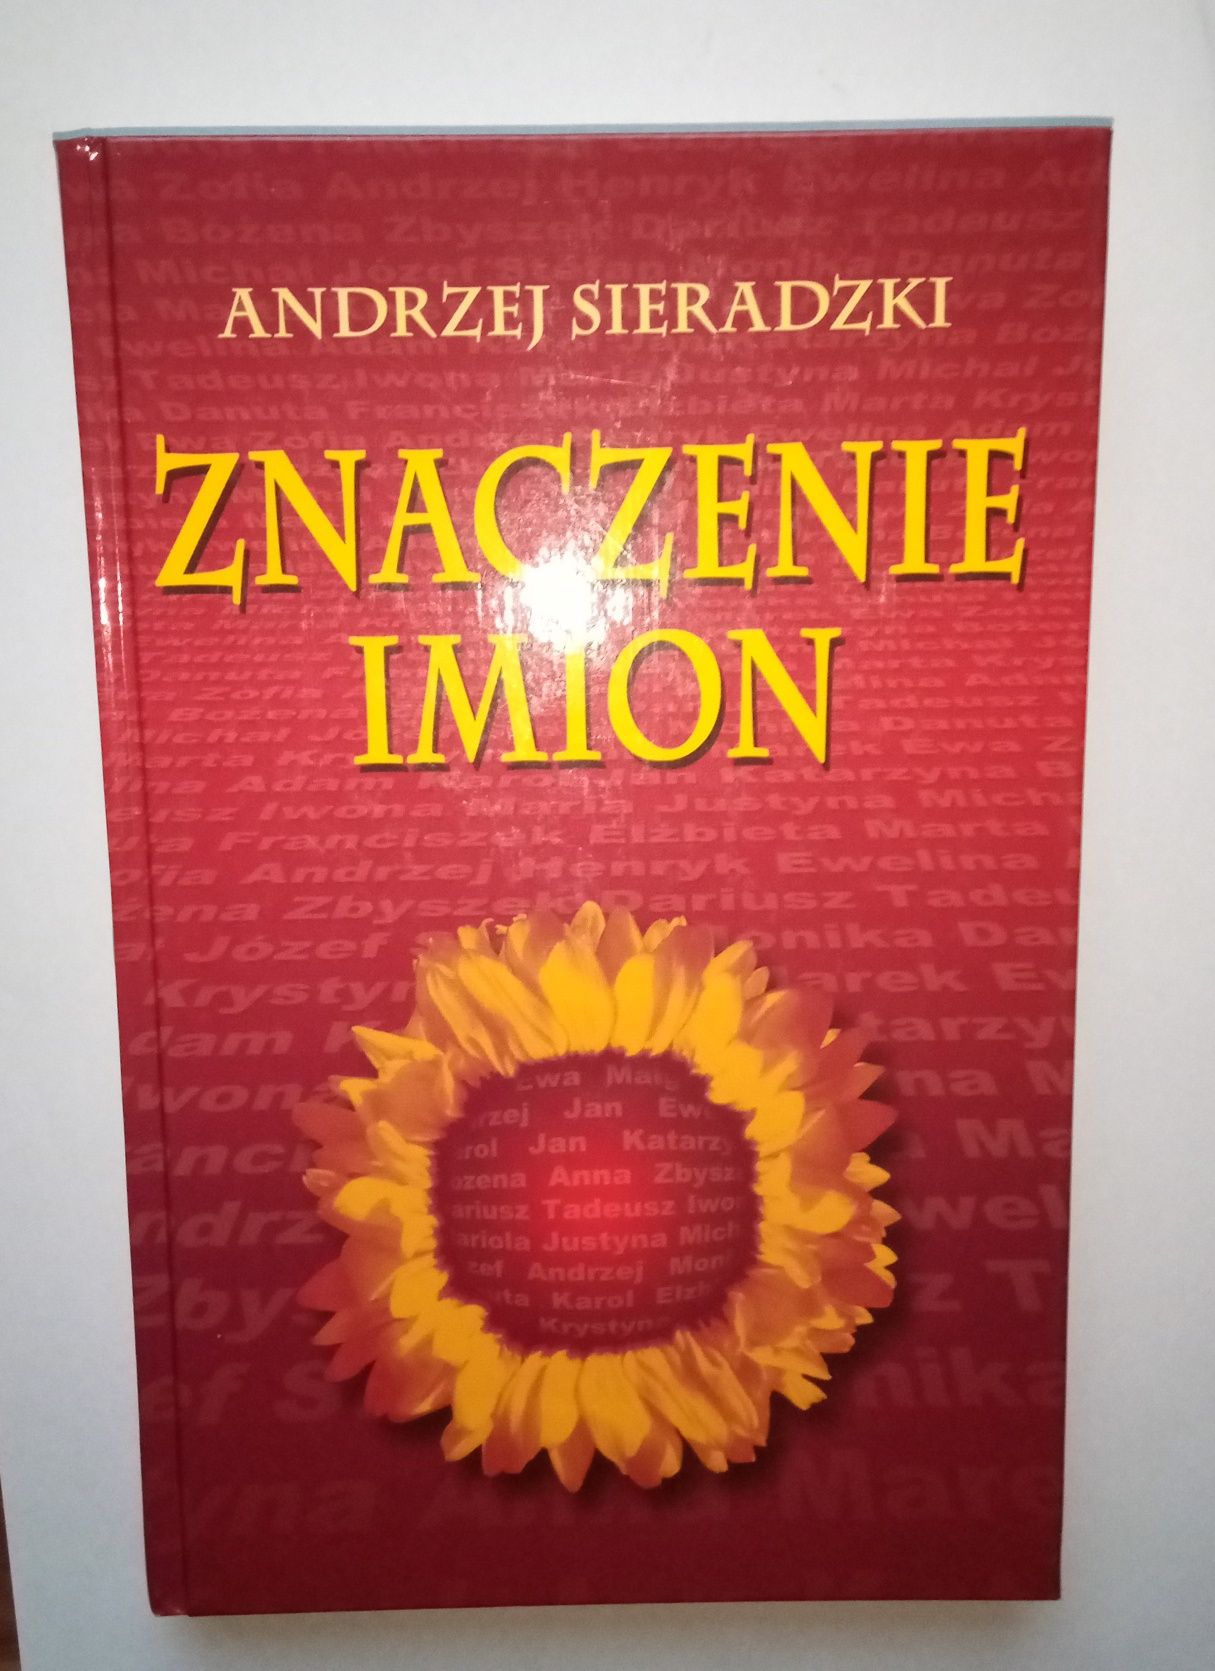 Andrzej Sieradzki "Znaczenie imion"